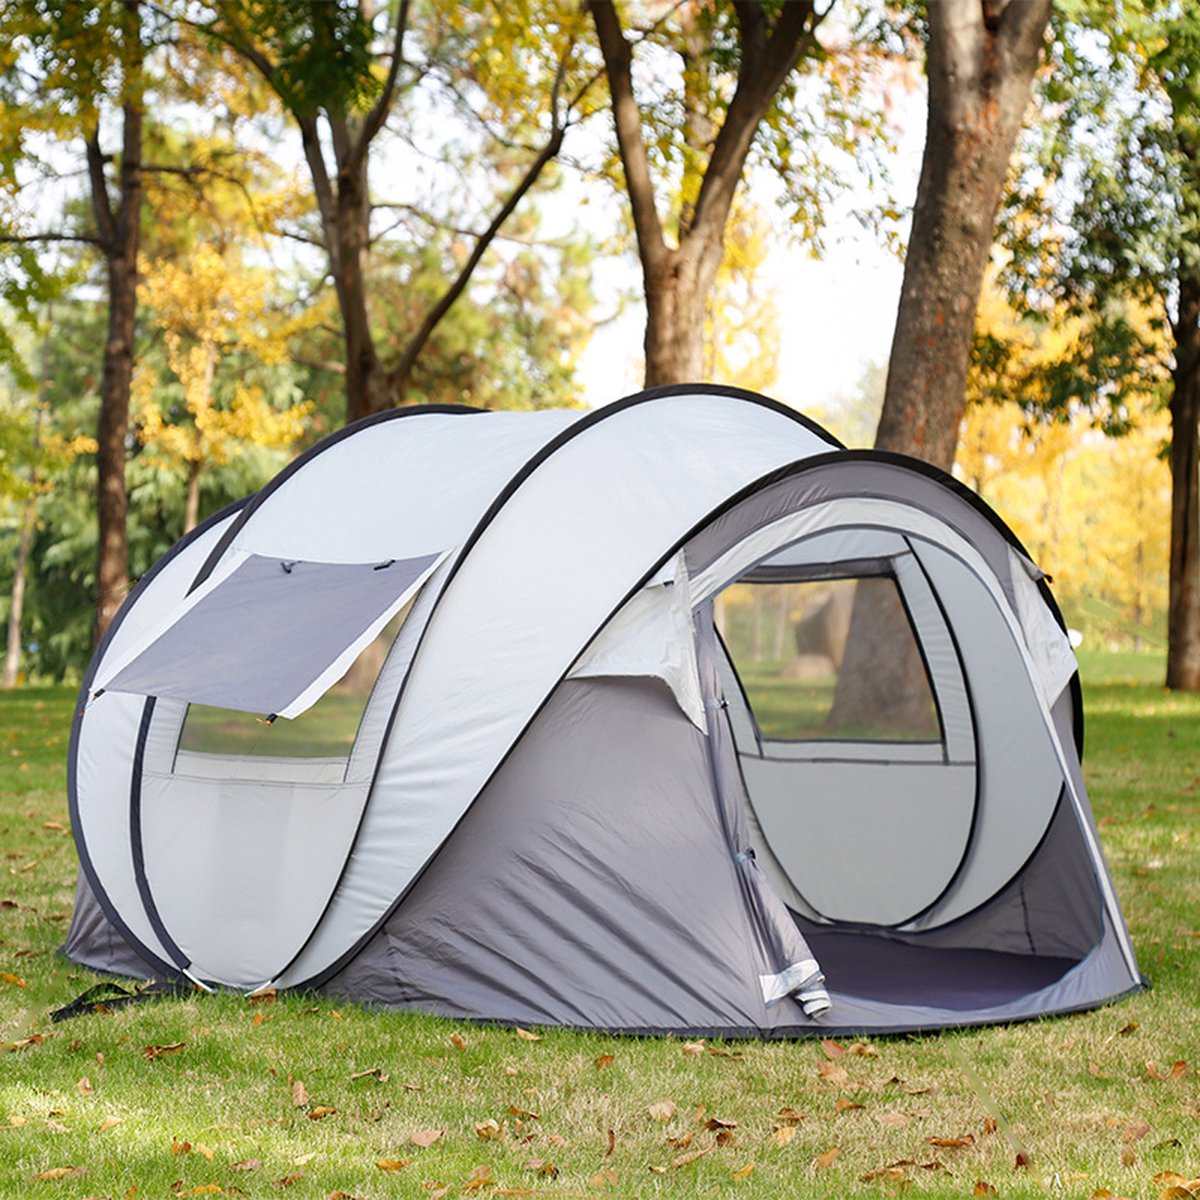 Campingtent 3-4 personen250*150*120 cm- Anti-UV 40+ Pop Up tent--grijs